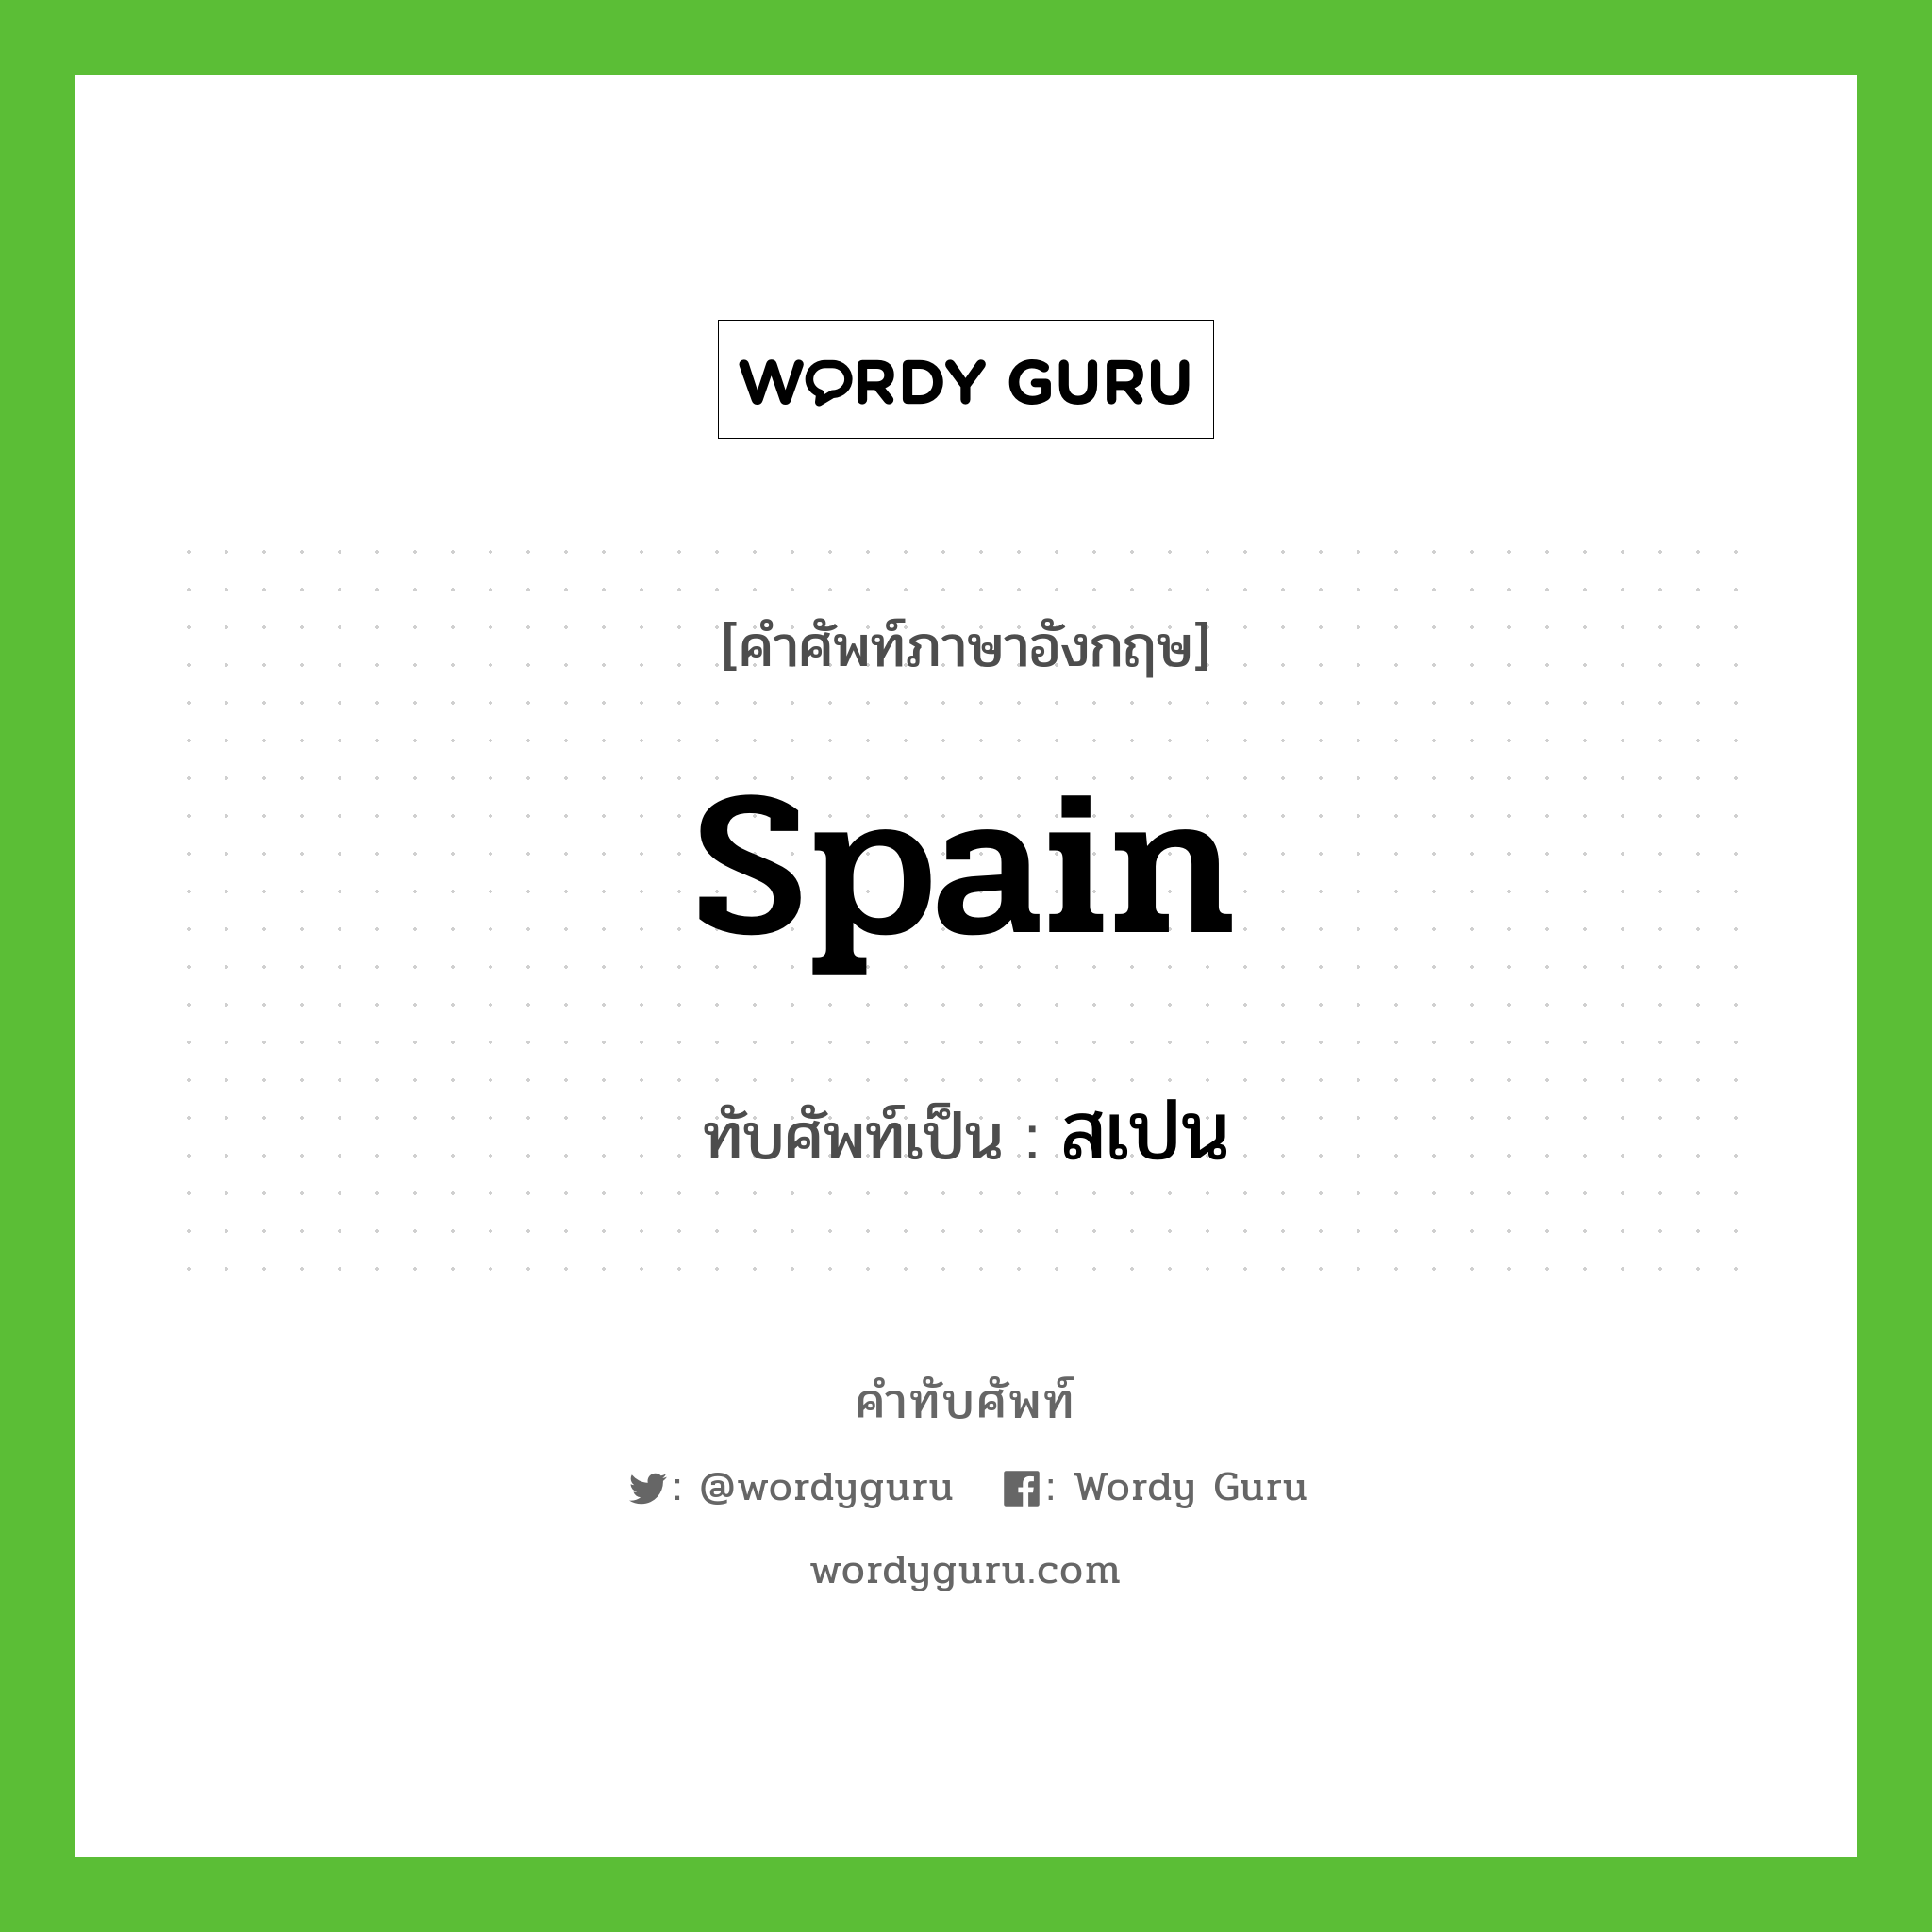 Spain เขียนเป็นคำไทยว่าอะไร?, คำศัพท์ภาษาอังกฤษ Spain ทับศัพท์เป็น สเปน